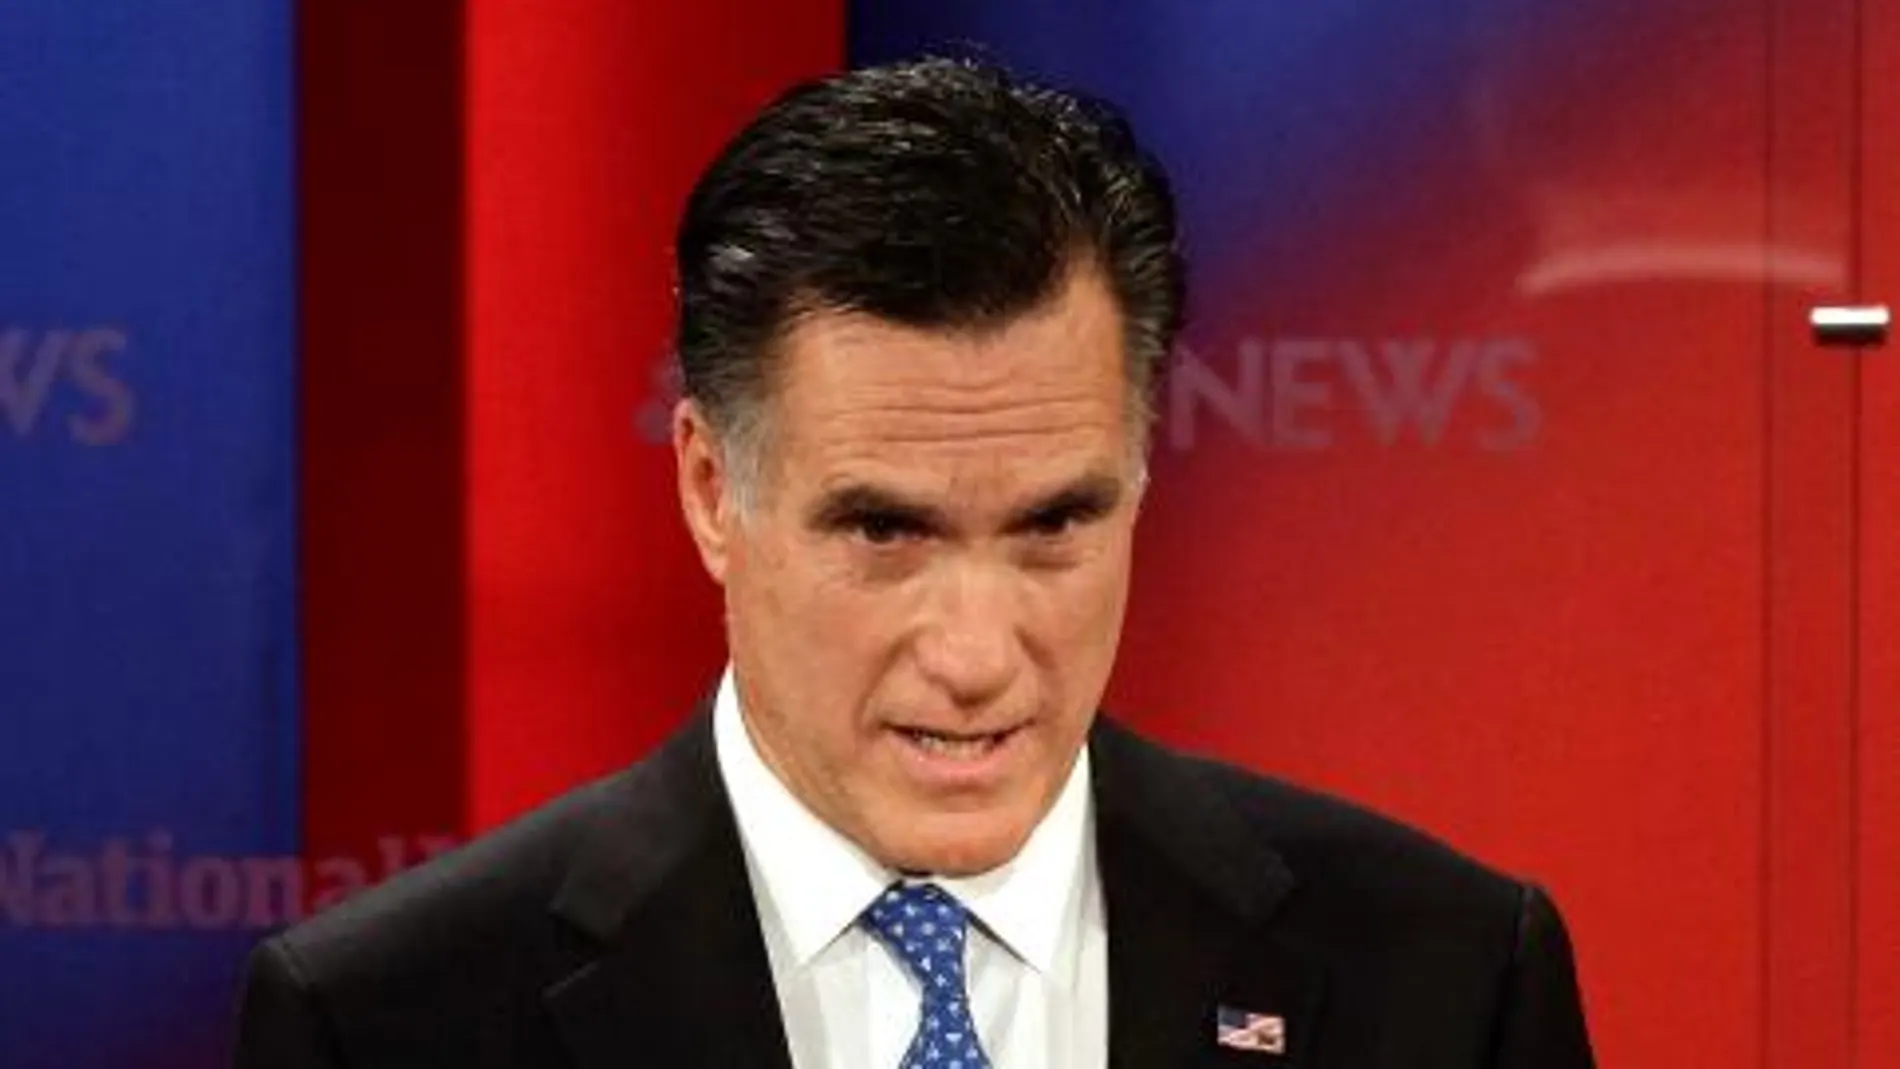 Romney arroja luz sobre sus finanzas para frenar su caída